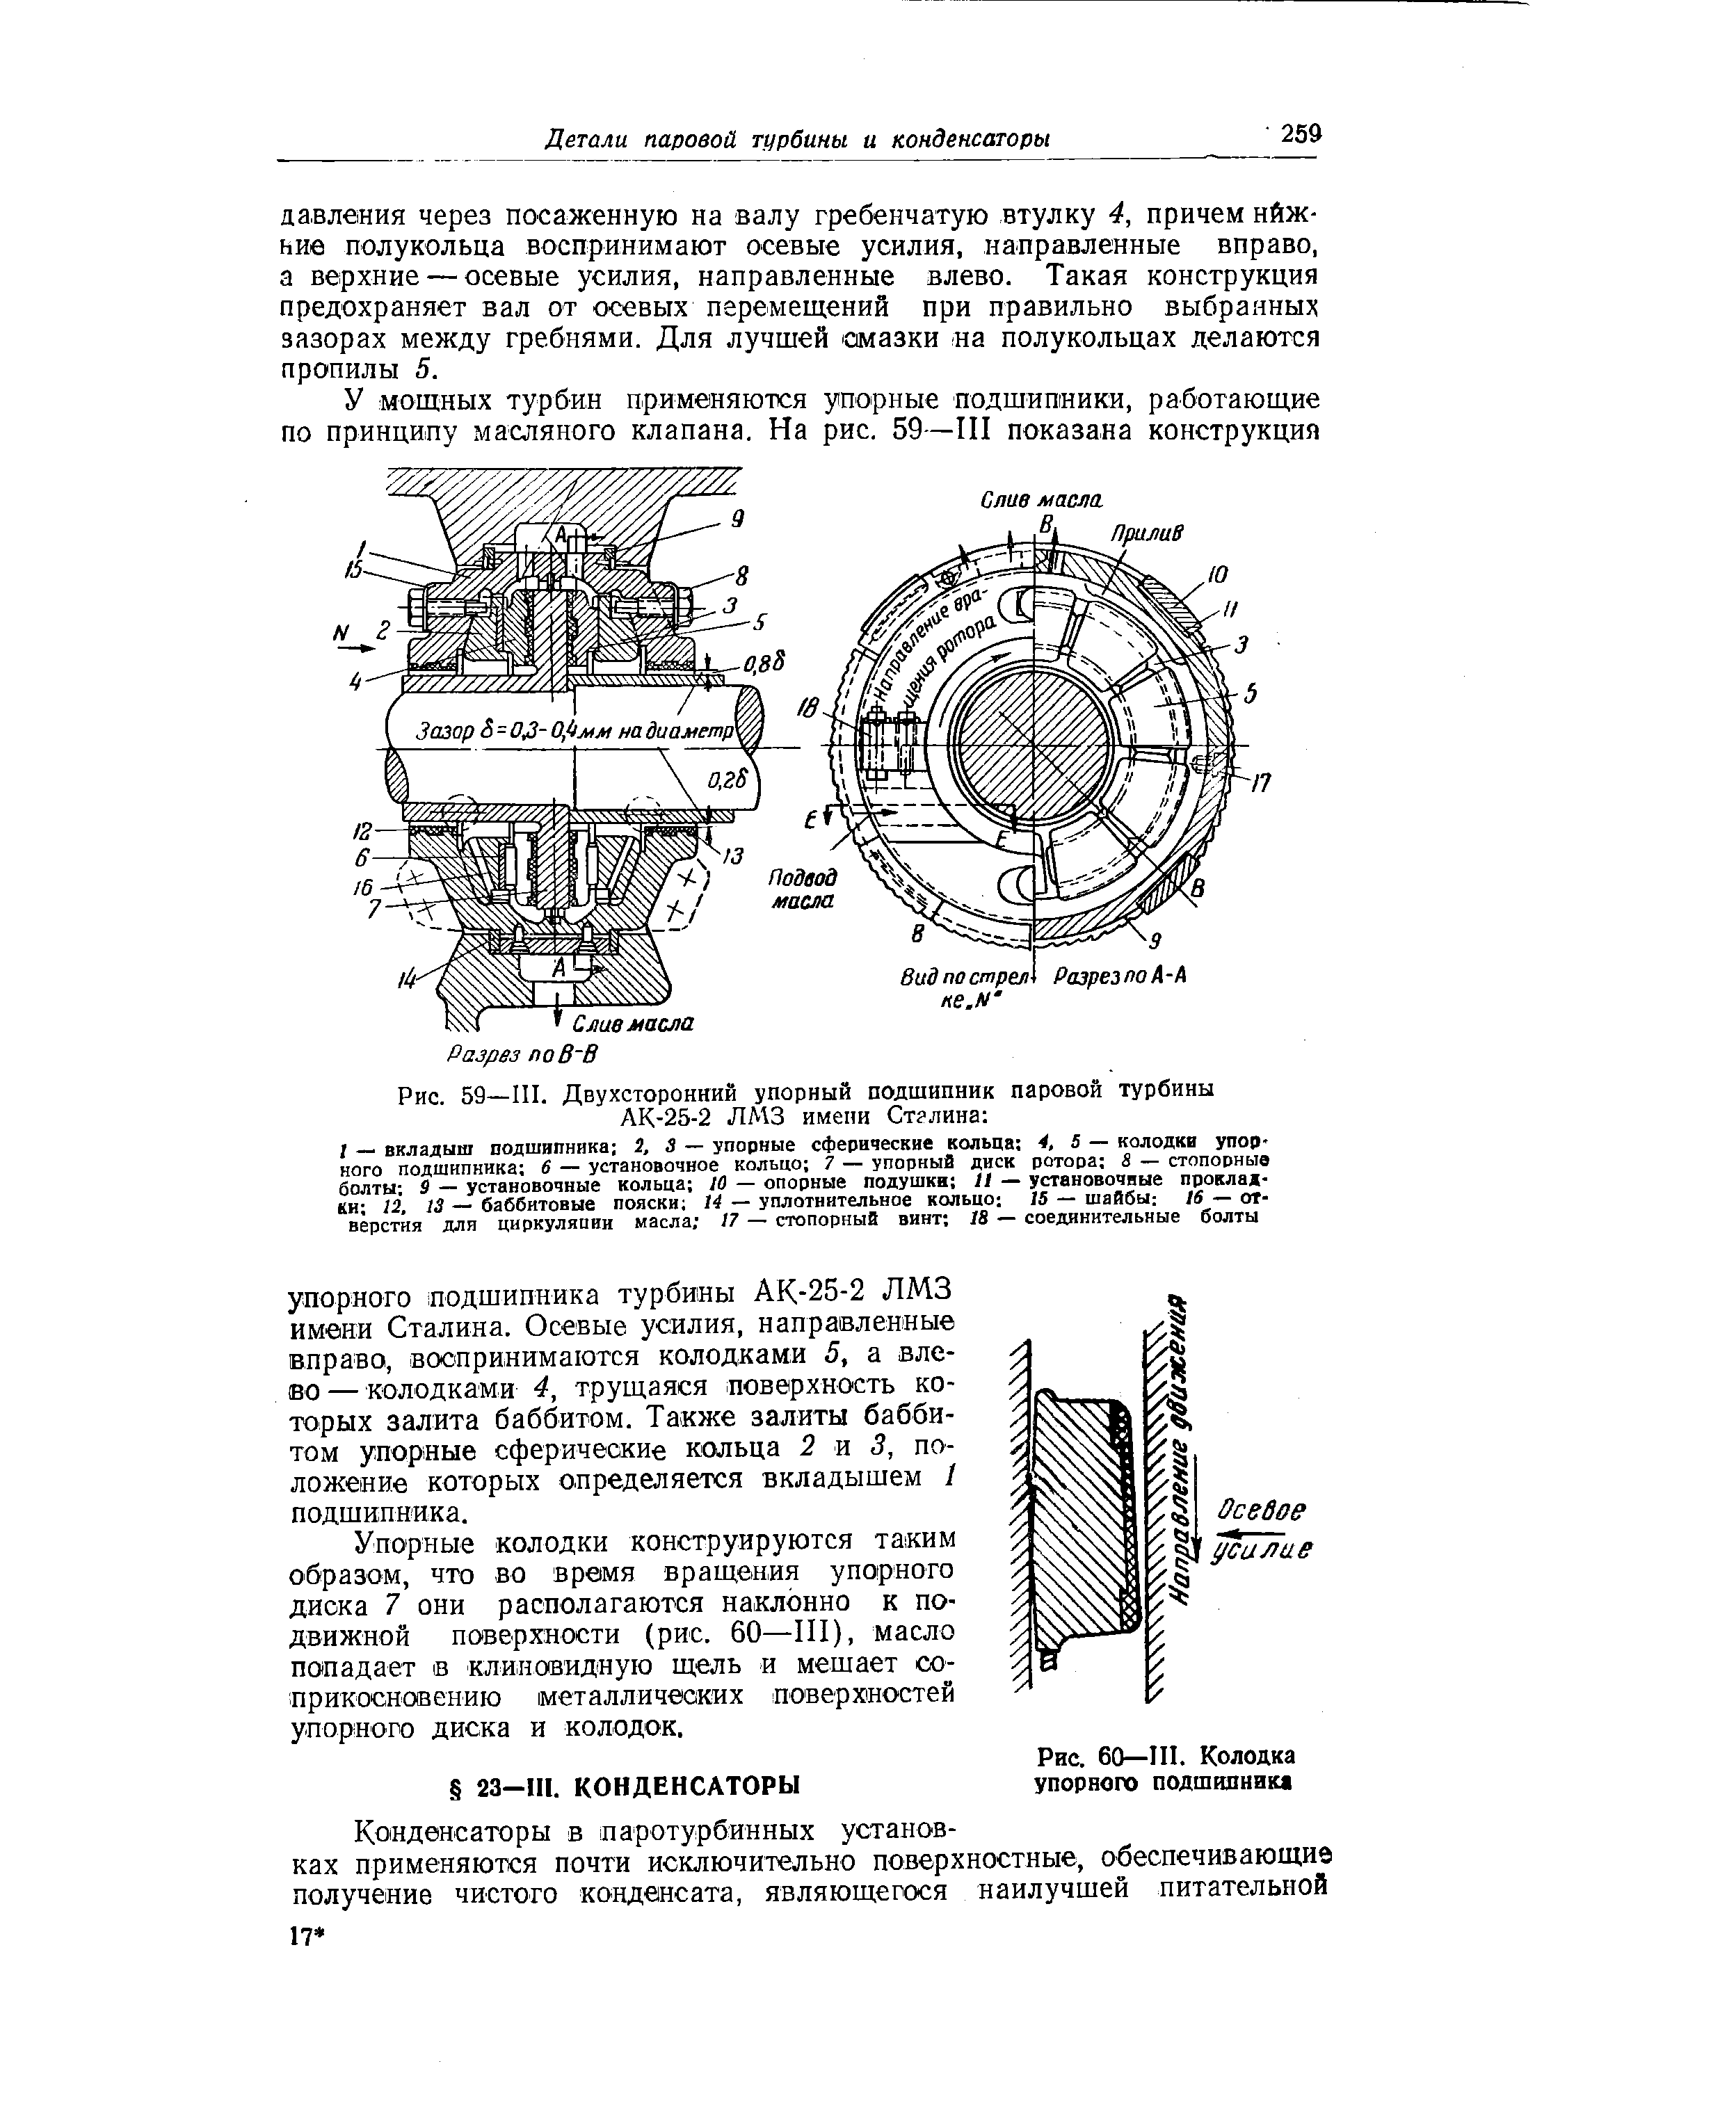 Рис. 59—III. Двухсторонний упорный подшипник паровой турбины АК-25-2 ЛМЗ имени Ст лина 
